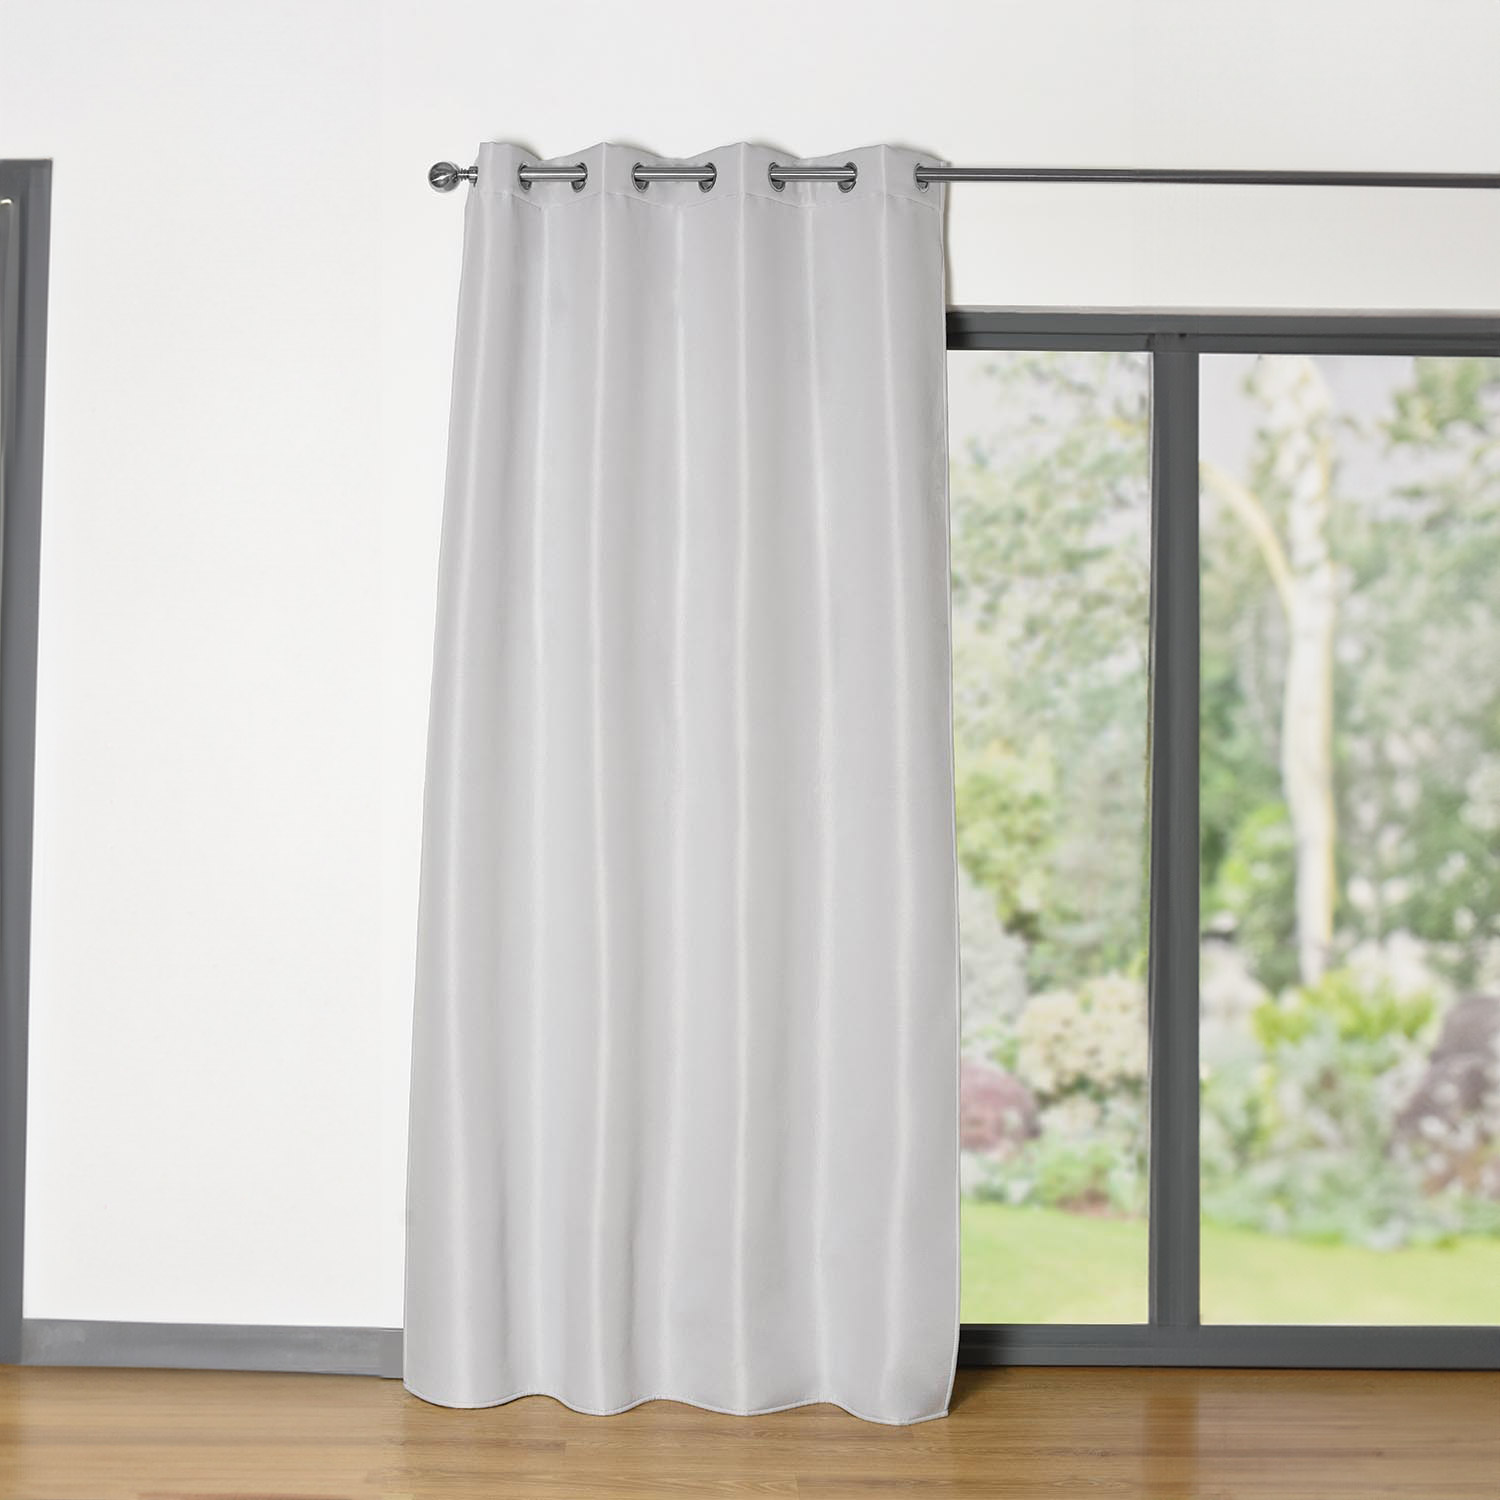 Multi-Purpose Curtain Panel Grey Image 2